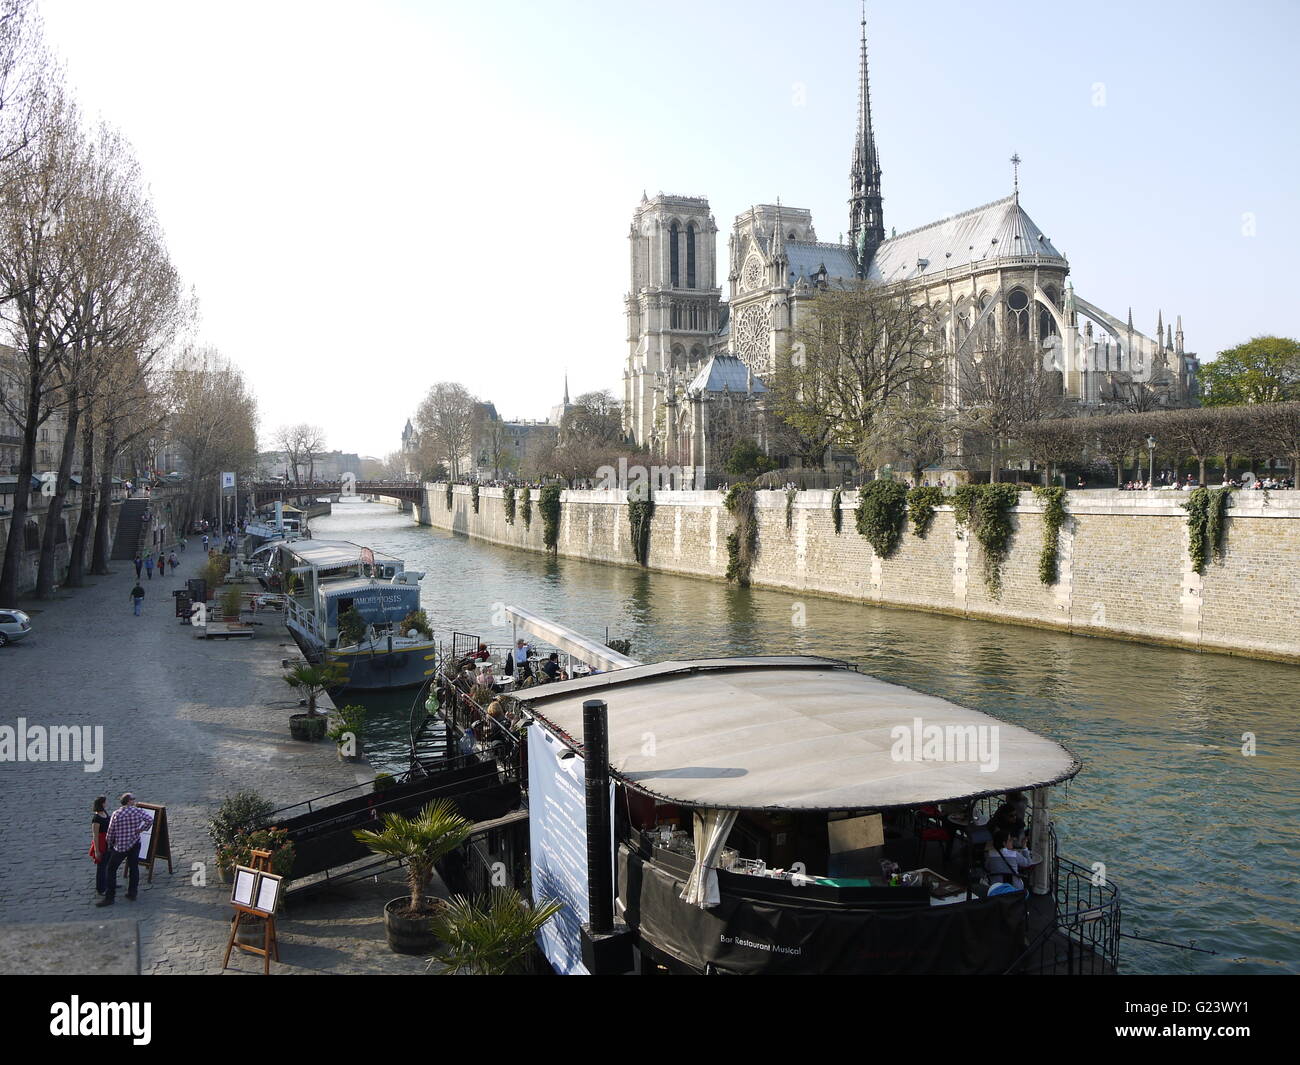 La cathédrale Notre Dame de Paris en capitale française, Paris est dans le centre de la ville, près de la rivière Seine avant le feu de 2019 Banque D'Images